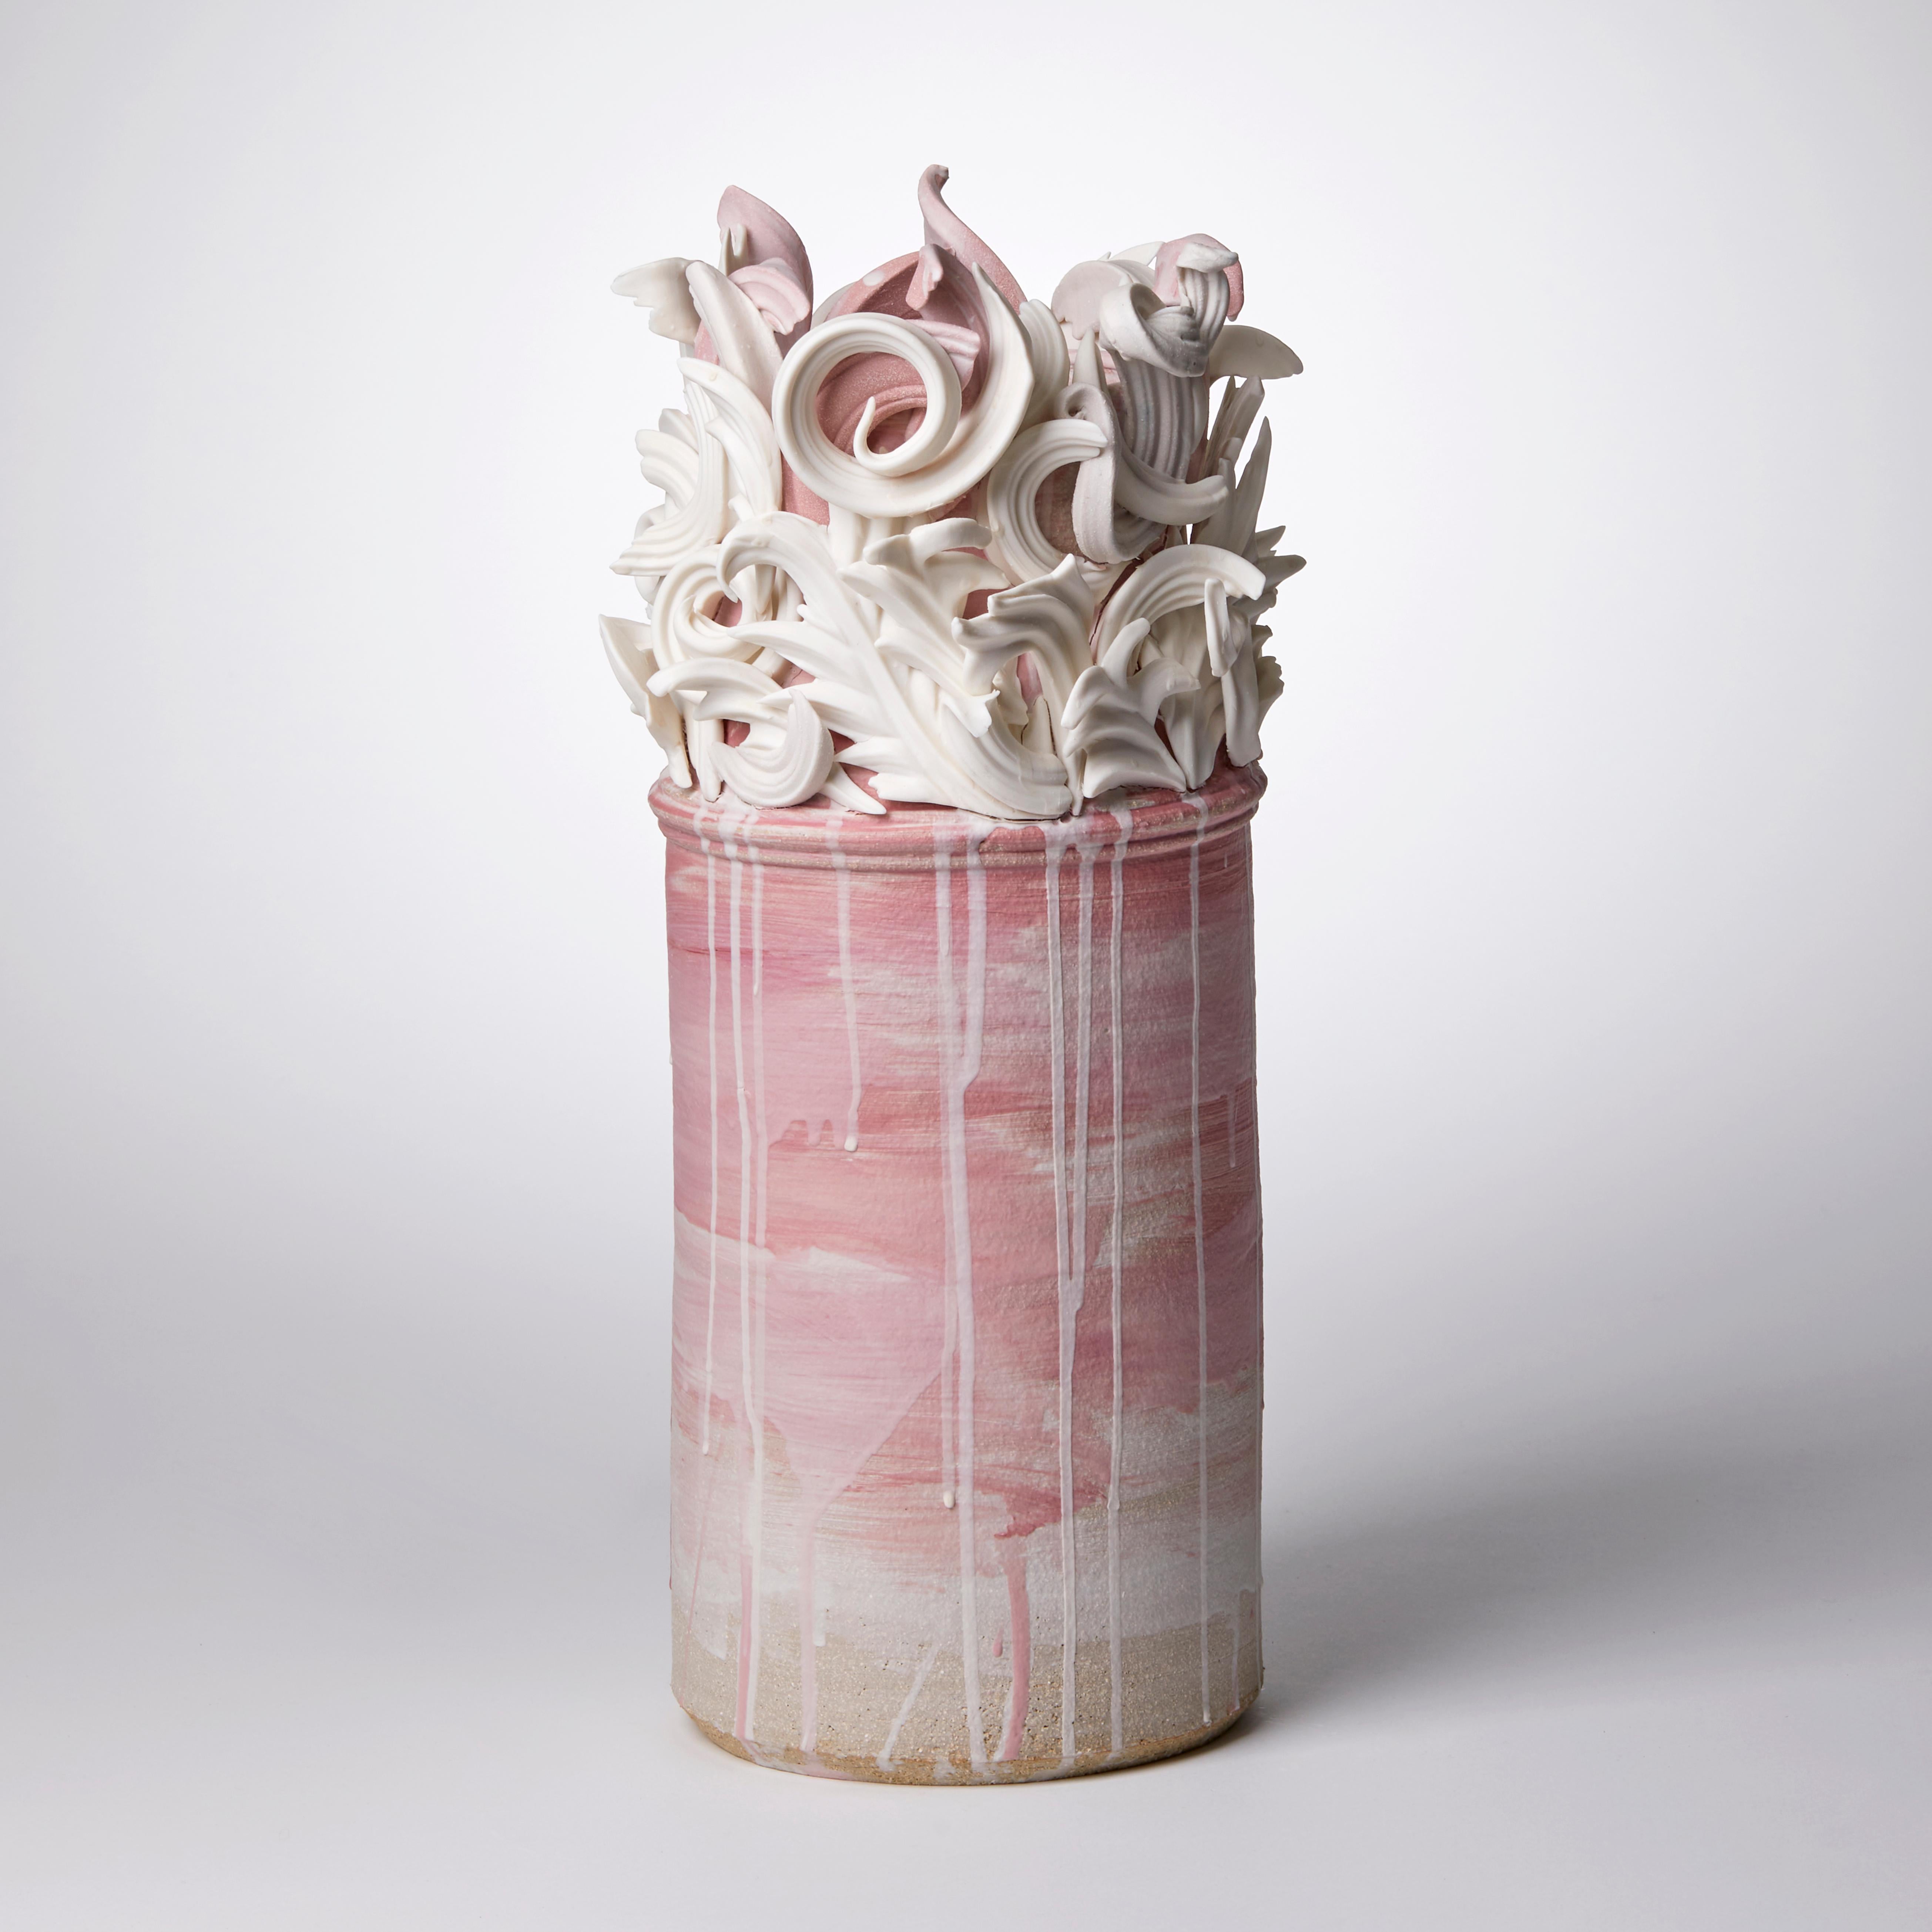 Colonnade I ist eine einzigartige, handgefertigte, skulpturale Keramikvase aus farbigem Steinzeug in zartrosa und weiß von der britischen Künstlerin Jo Taylor. Die zentrale Form wurde auf der Töpferscheibe gedreht und ebenfalls von Hand gefertigt,